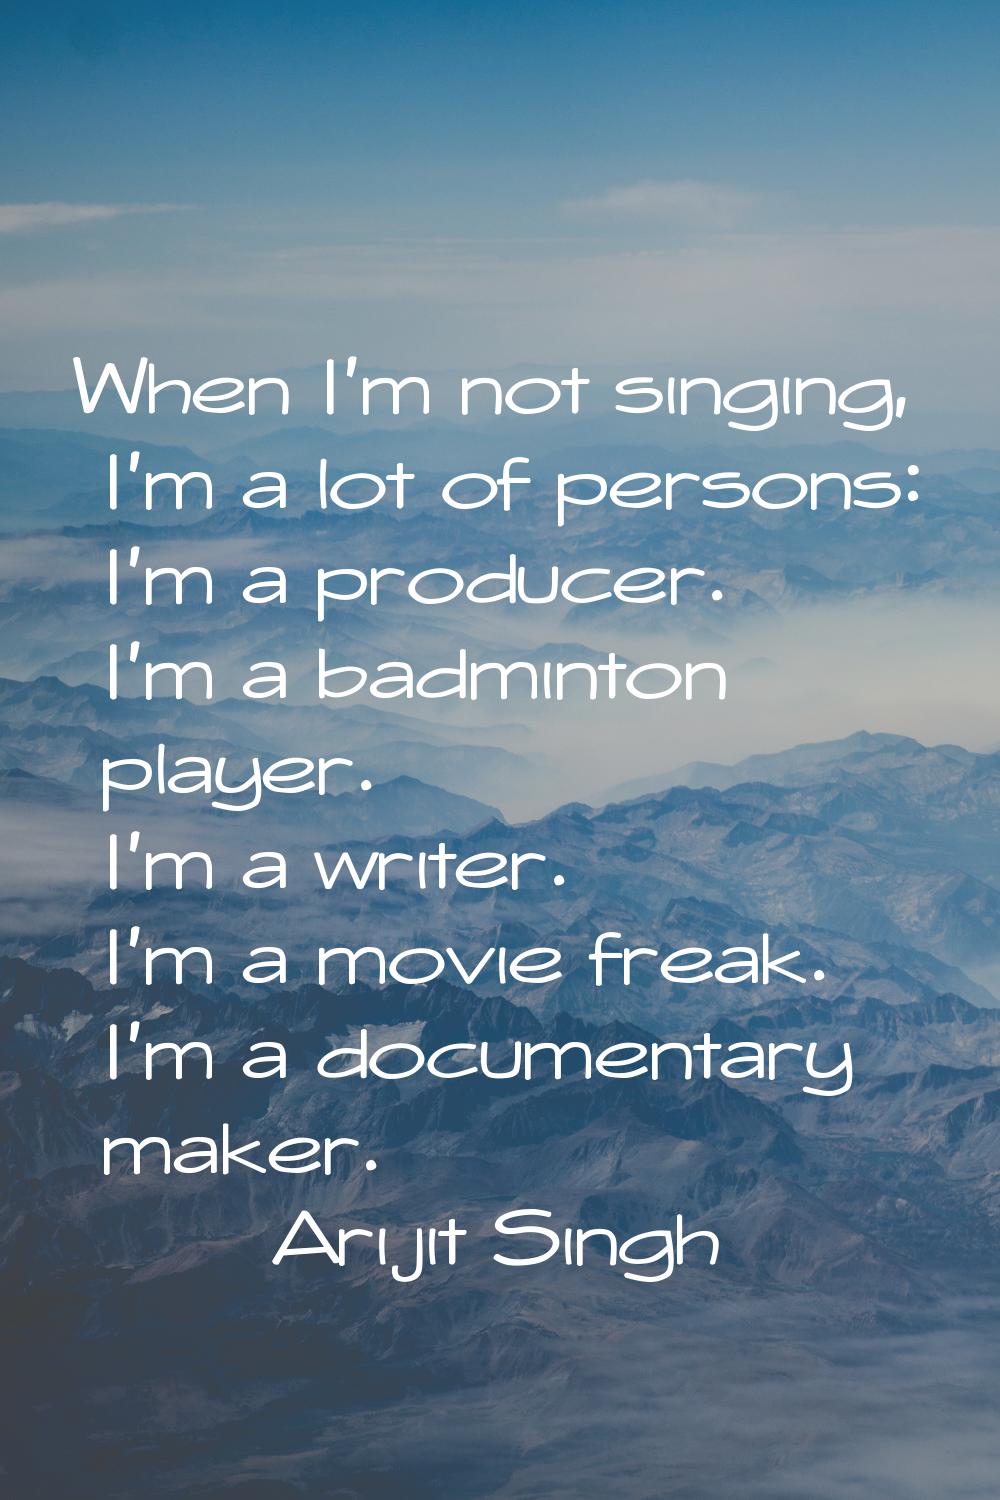 When I'm not singing, I'm a lot of persons: I'm a producer. I'm a badminton player. I'm a writer. I